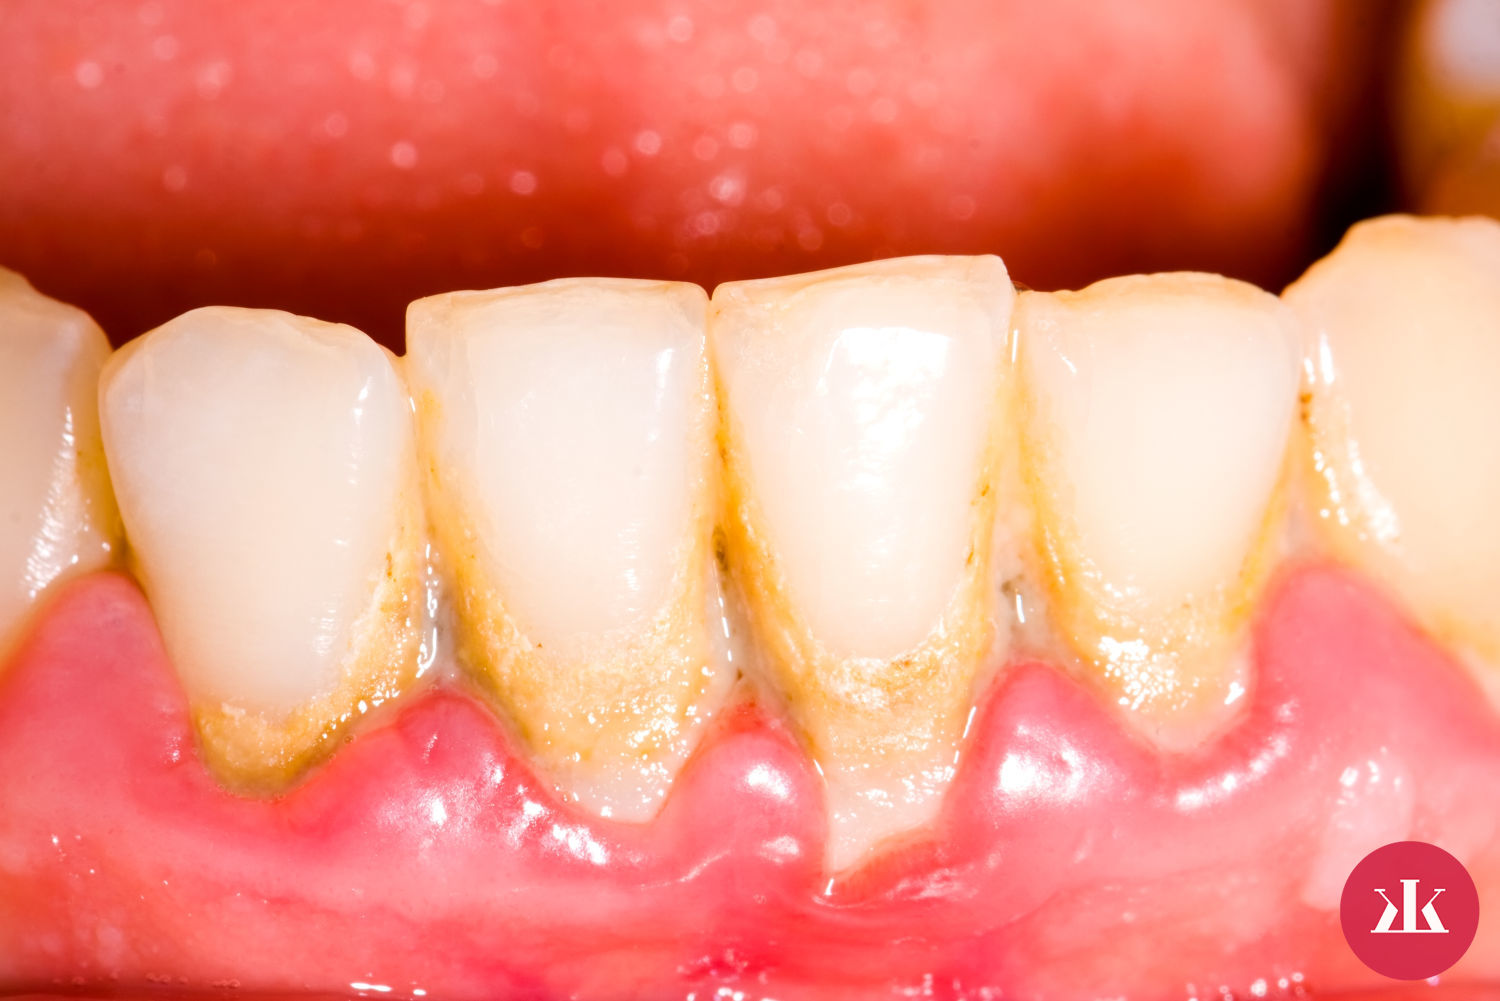 vznik a pricina zubneho plaku